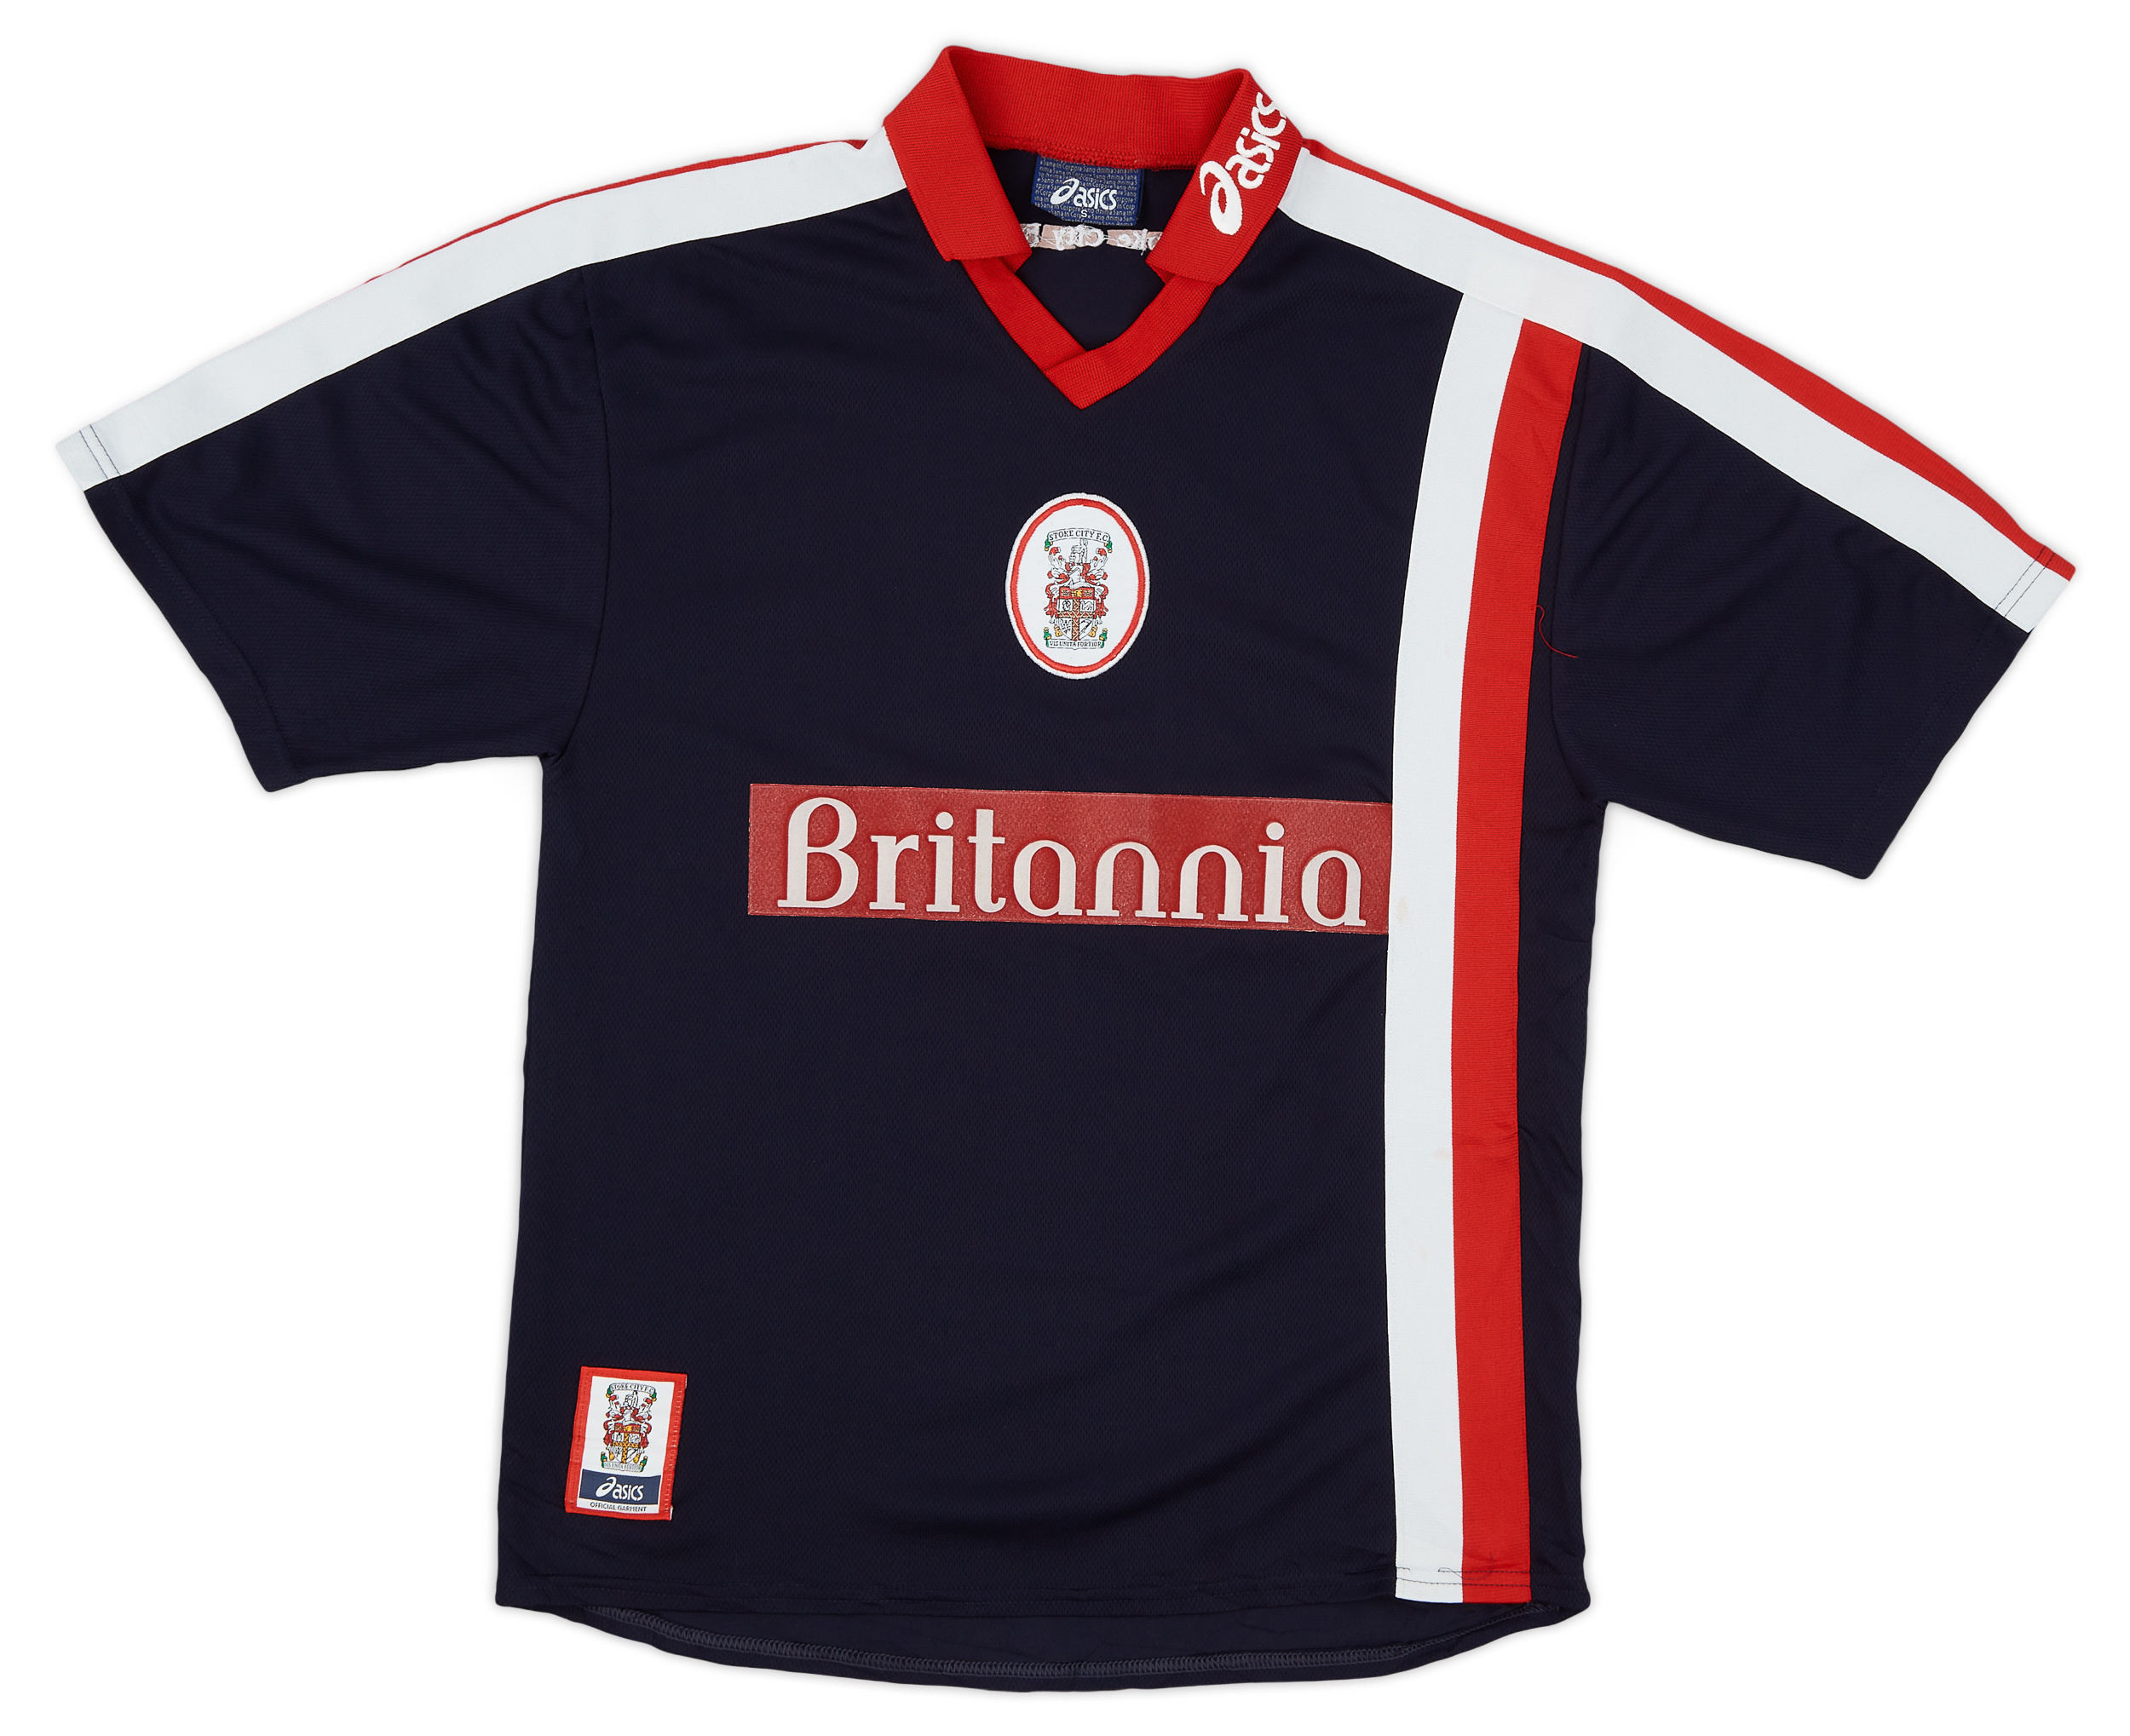 Stoke City  Fora camisa (Original)